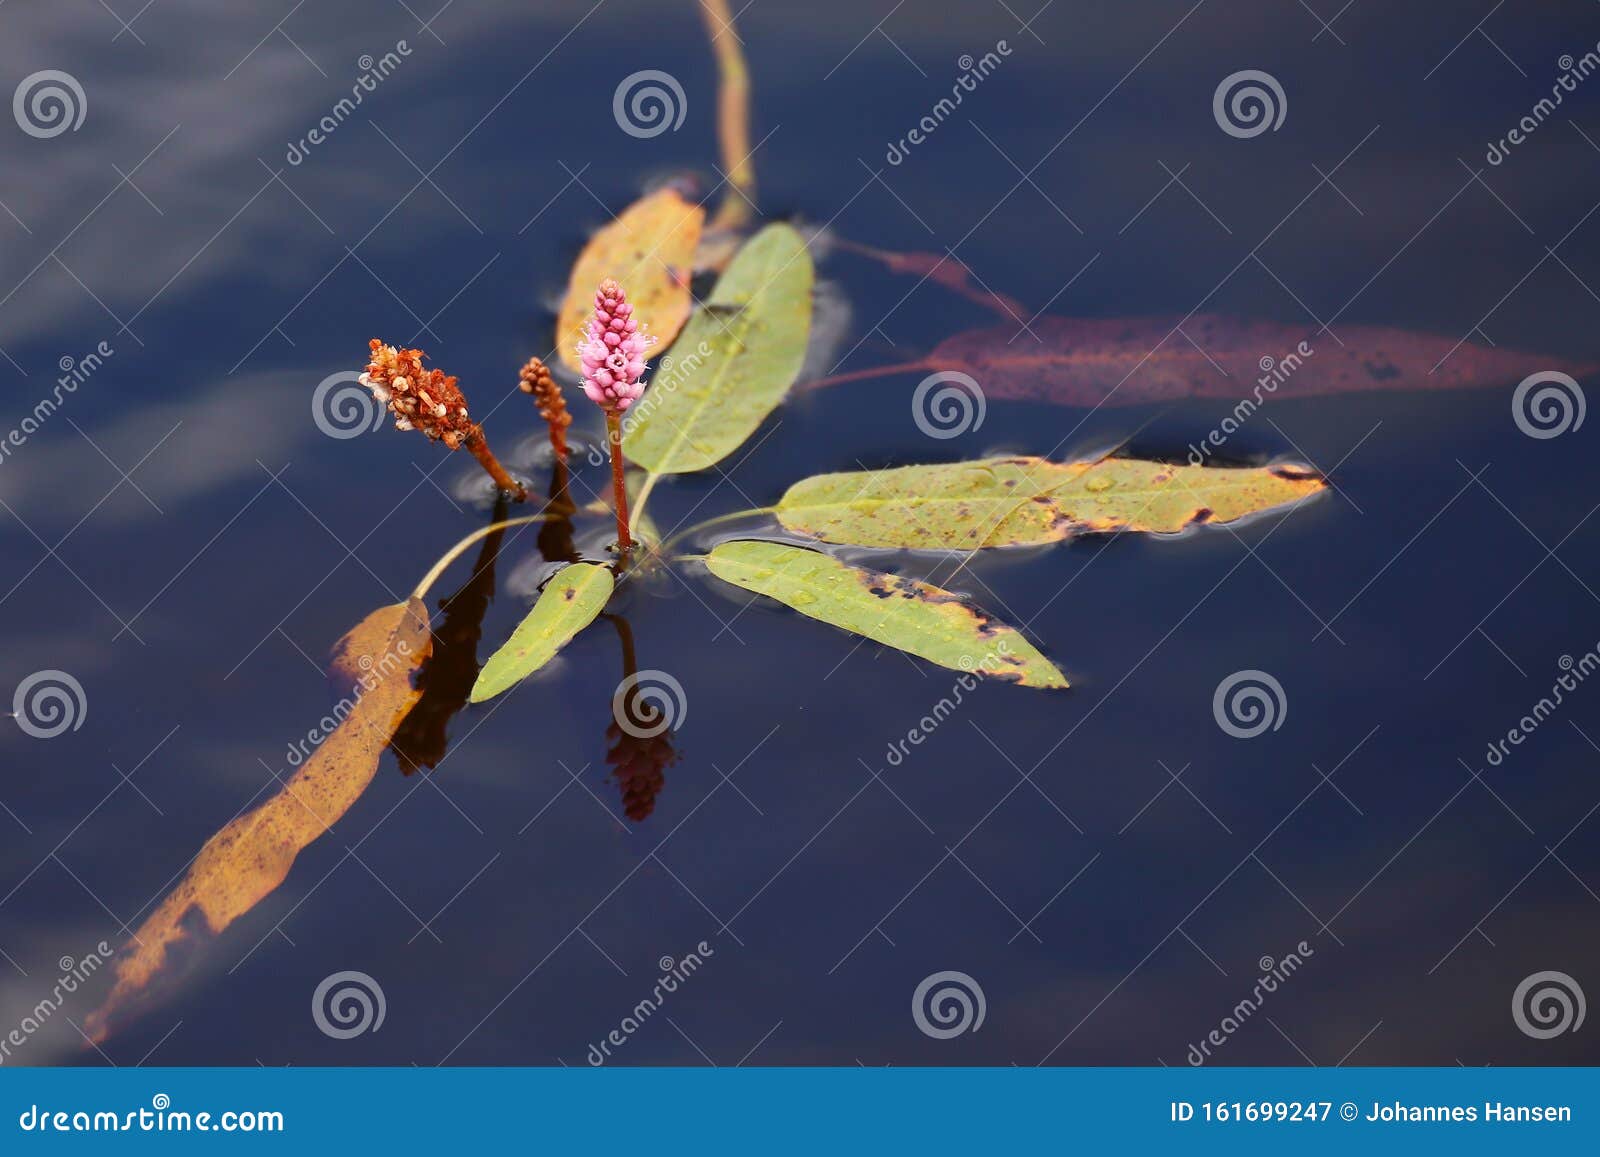 longroot smartweed (persicaria amphibia) growing in the water